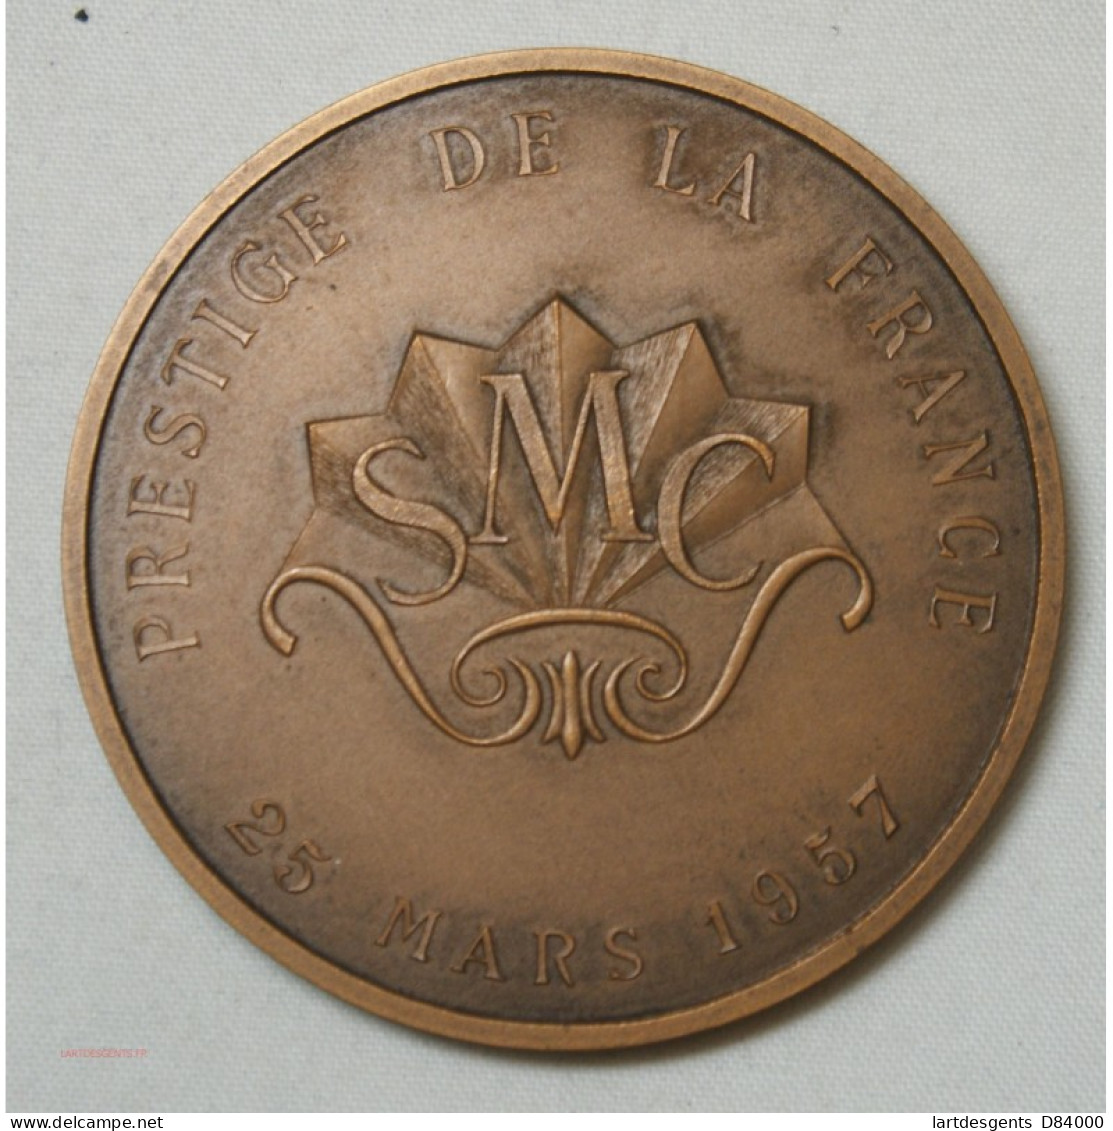 Médaille Prestige De La France, SMC Société Marseillaise De Crédit 25-3-1957 - Professionals/Firms